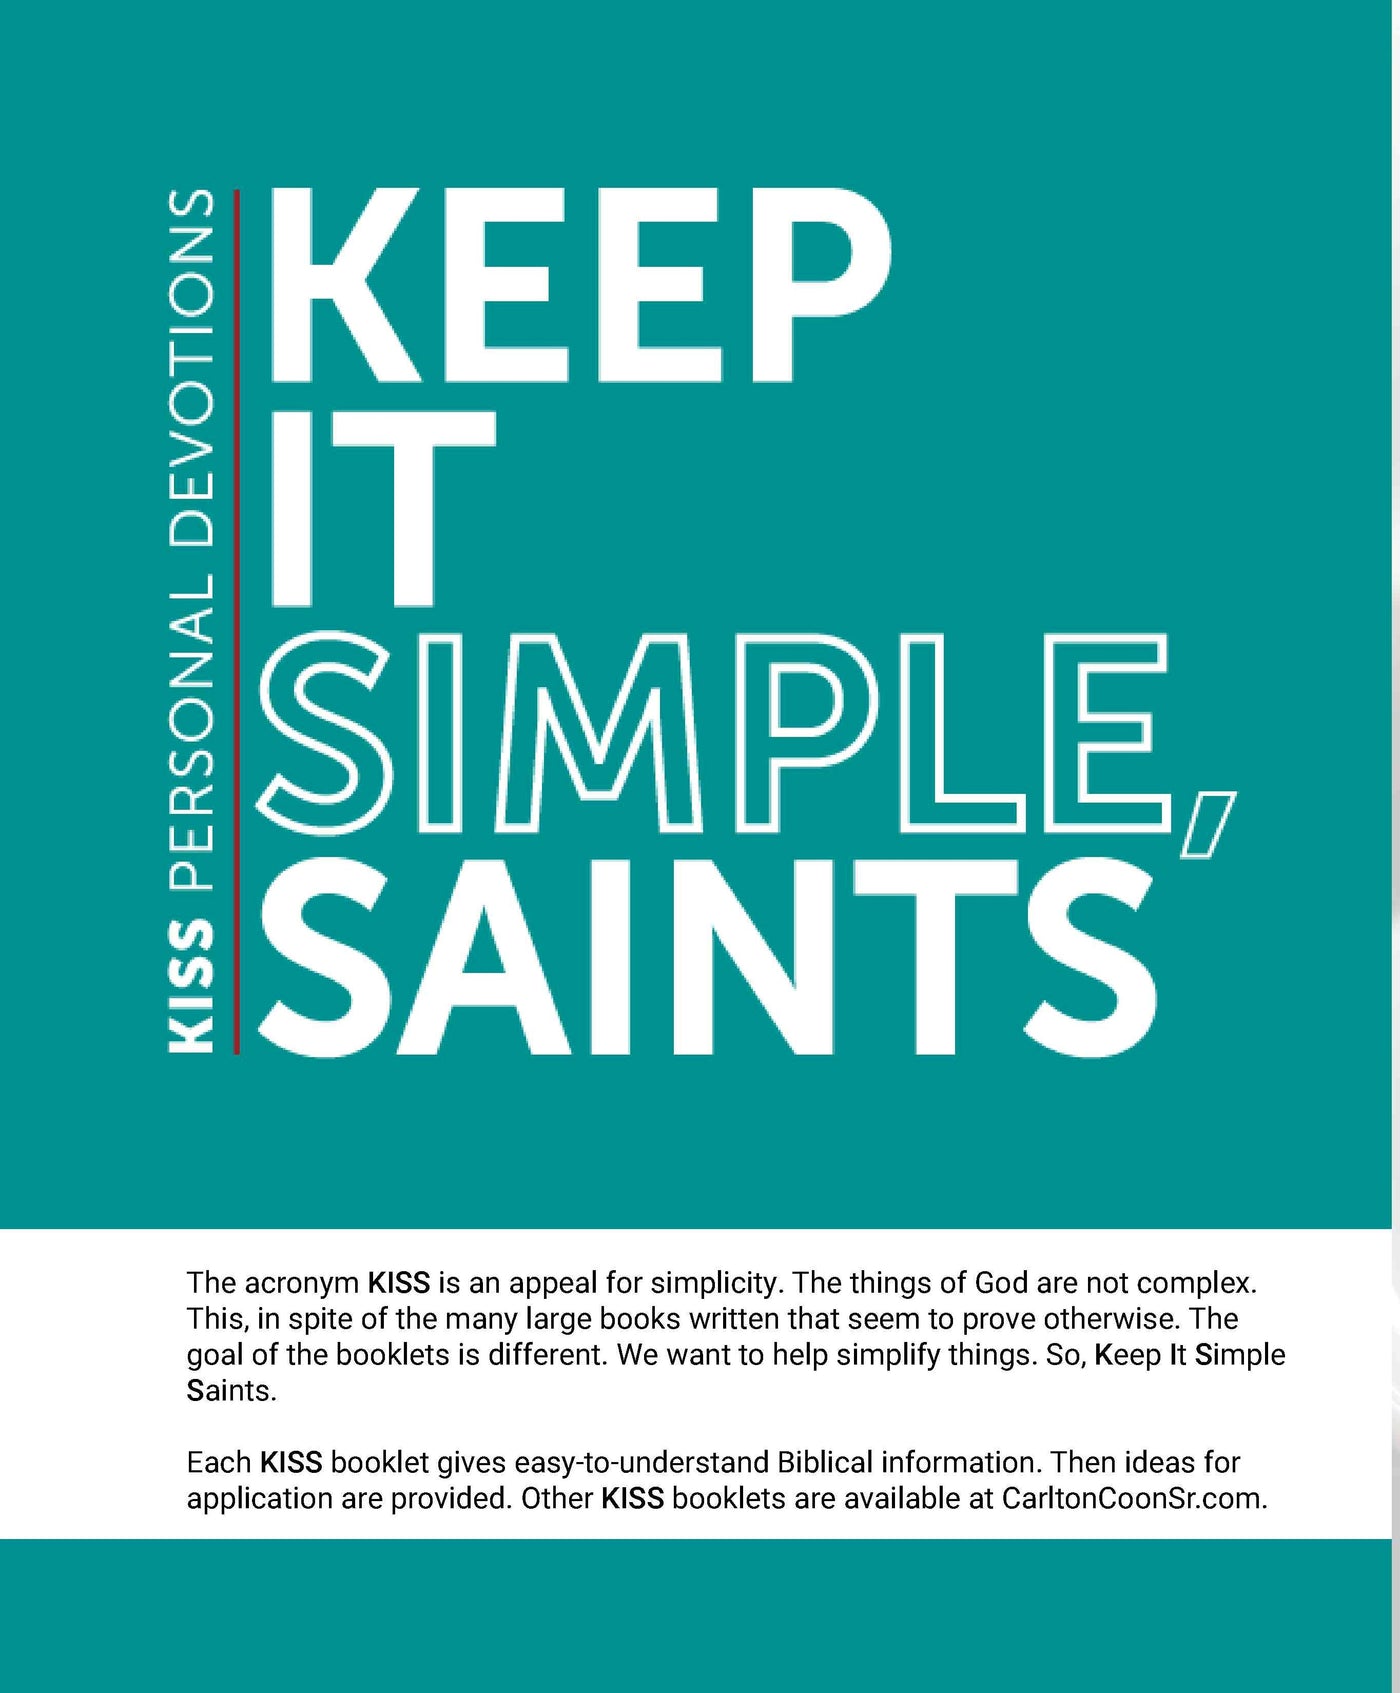 Personal Devotion - Keep It Simple Saints (K.I.S.S.)